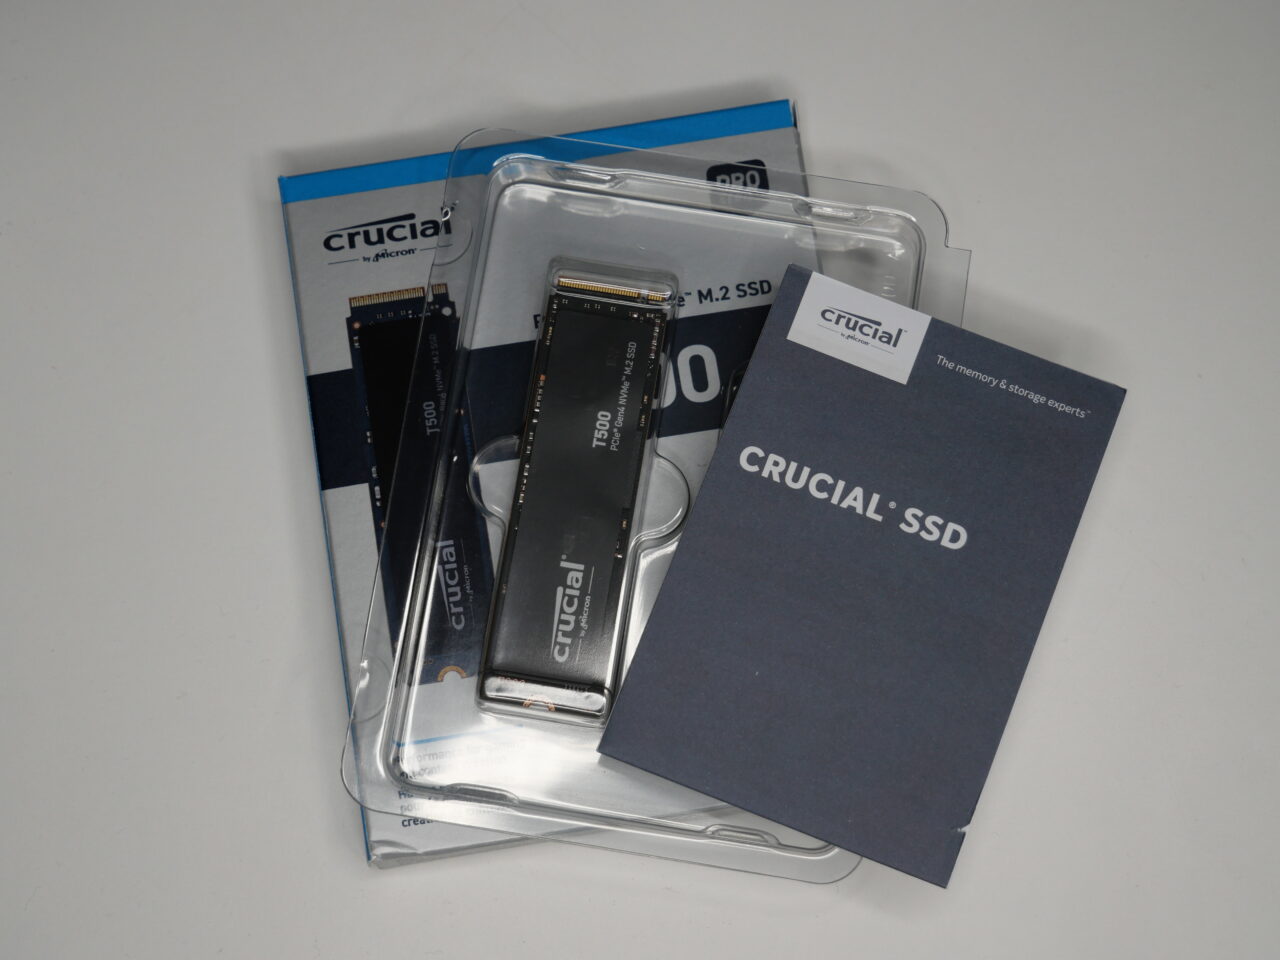 Dysk SSD marki Crucial leżący obok opakowania i instrukcji użytkownika na białym tle.